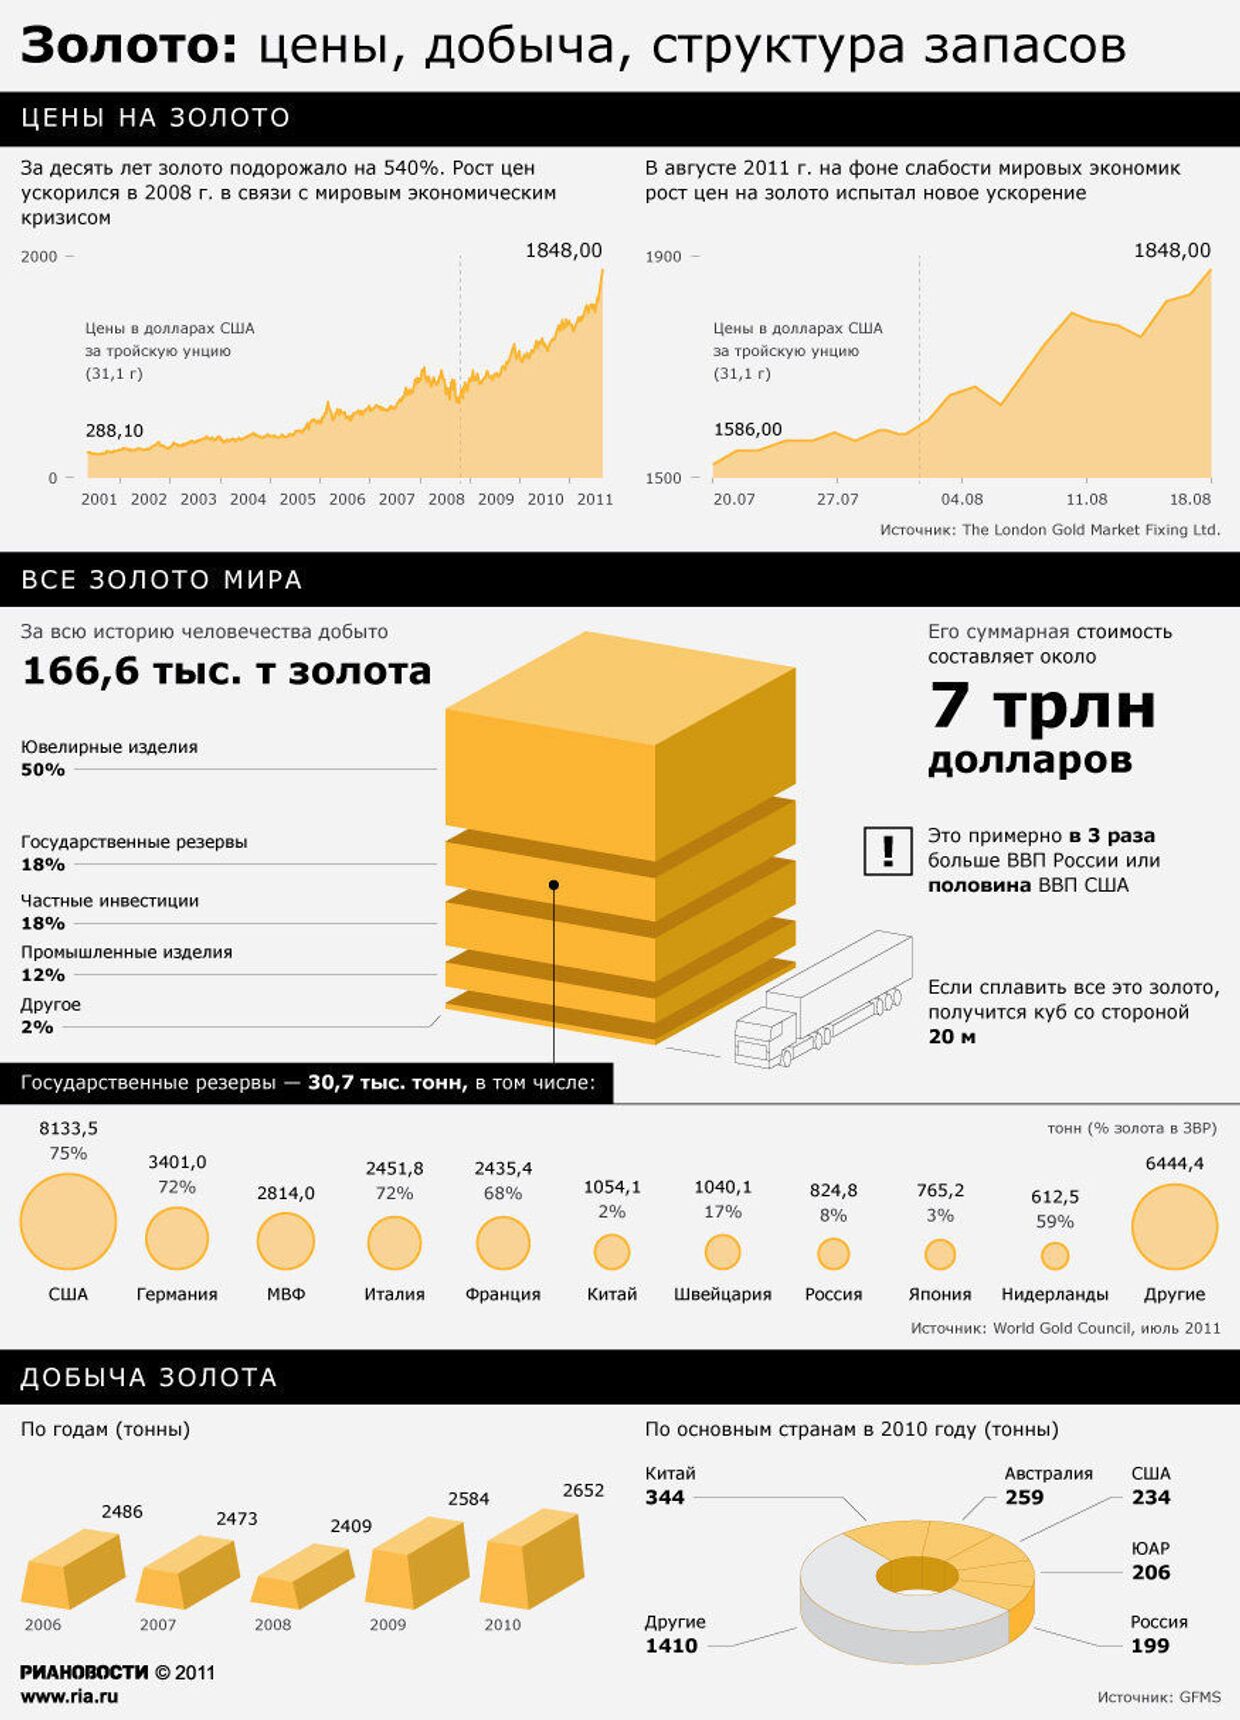 Капитализация золота в мире. Мировые запасы золота. Объем добытого золота в мире. Запасы и добыча золота в мире. Золото инфографика.